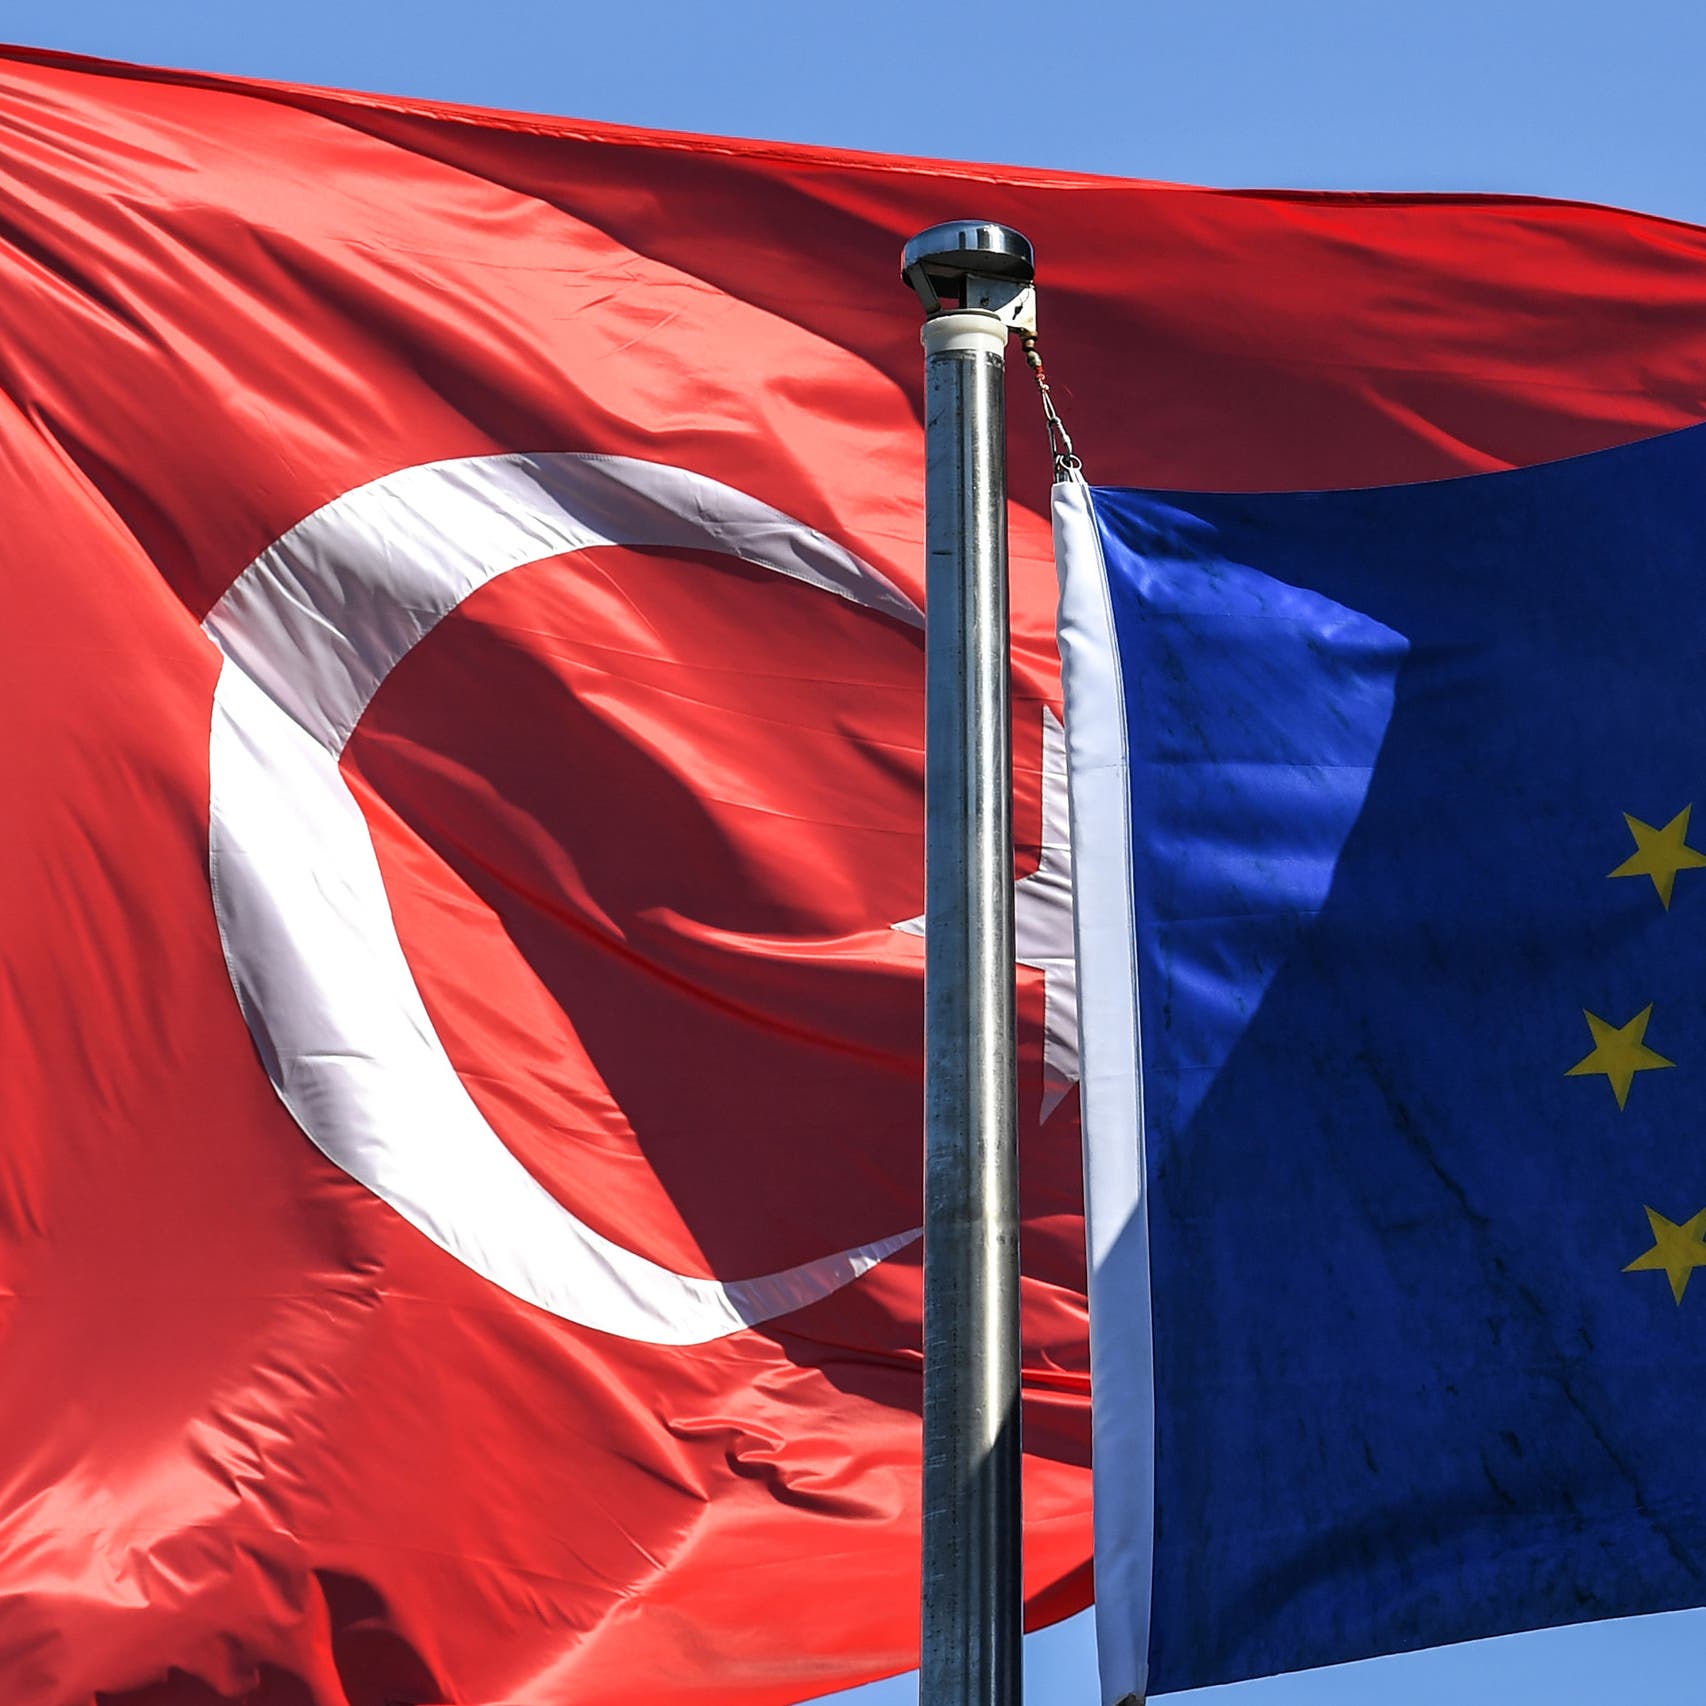 الاتحاد الأوروبي يدرس فرض عقوبات اقتصادية على تركيا